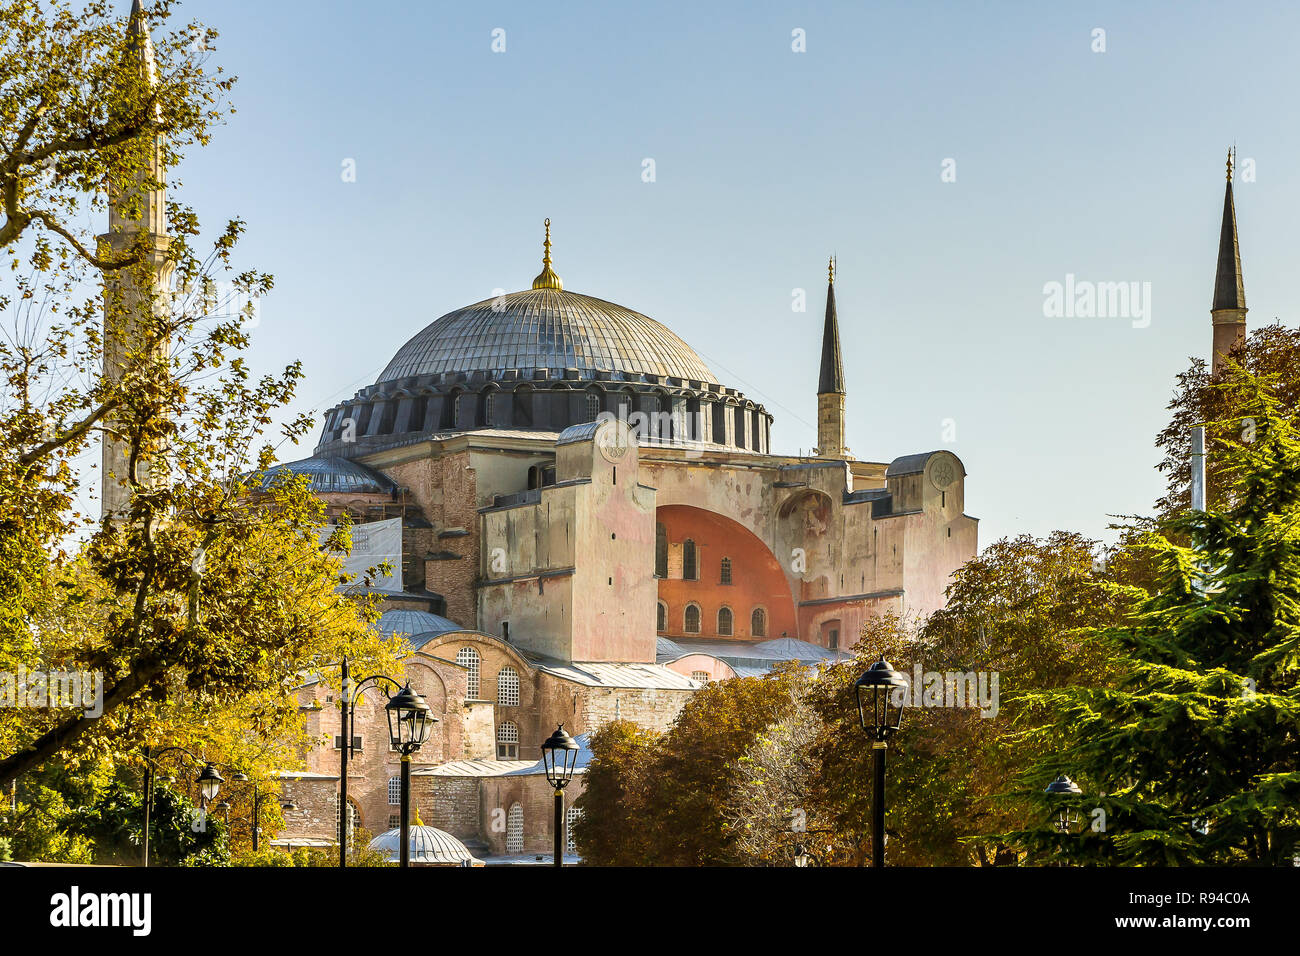 Fassade der Hagia Sofia und seiner Kuppel gegen den blauen Himmel, Istanbul, Türkei, 9. Oktober 2013 Stockfoto